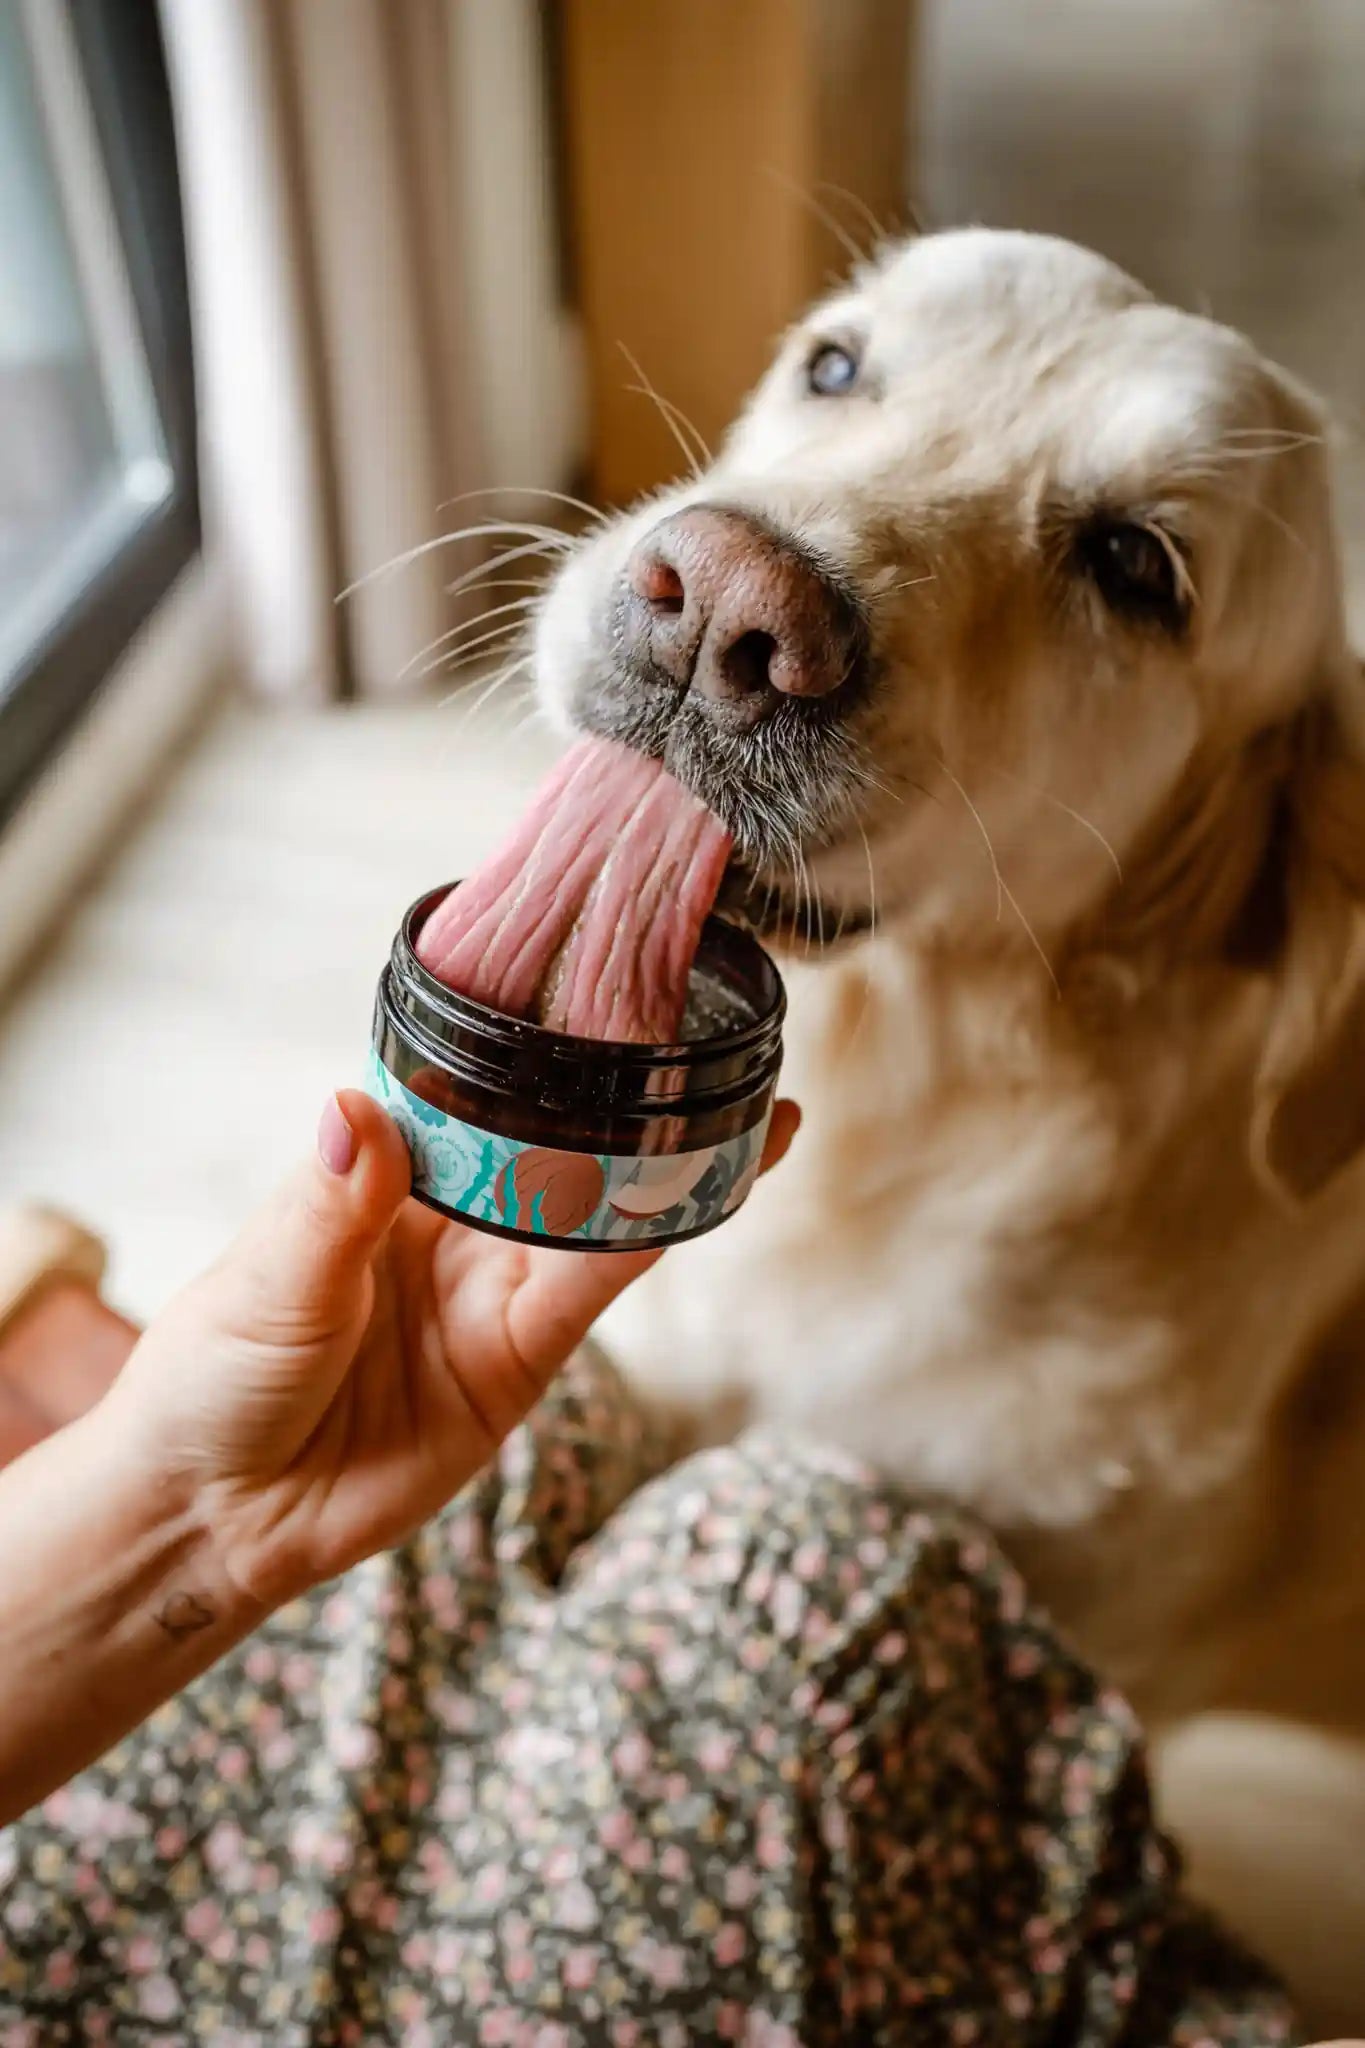 pasta de dientes para perros